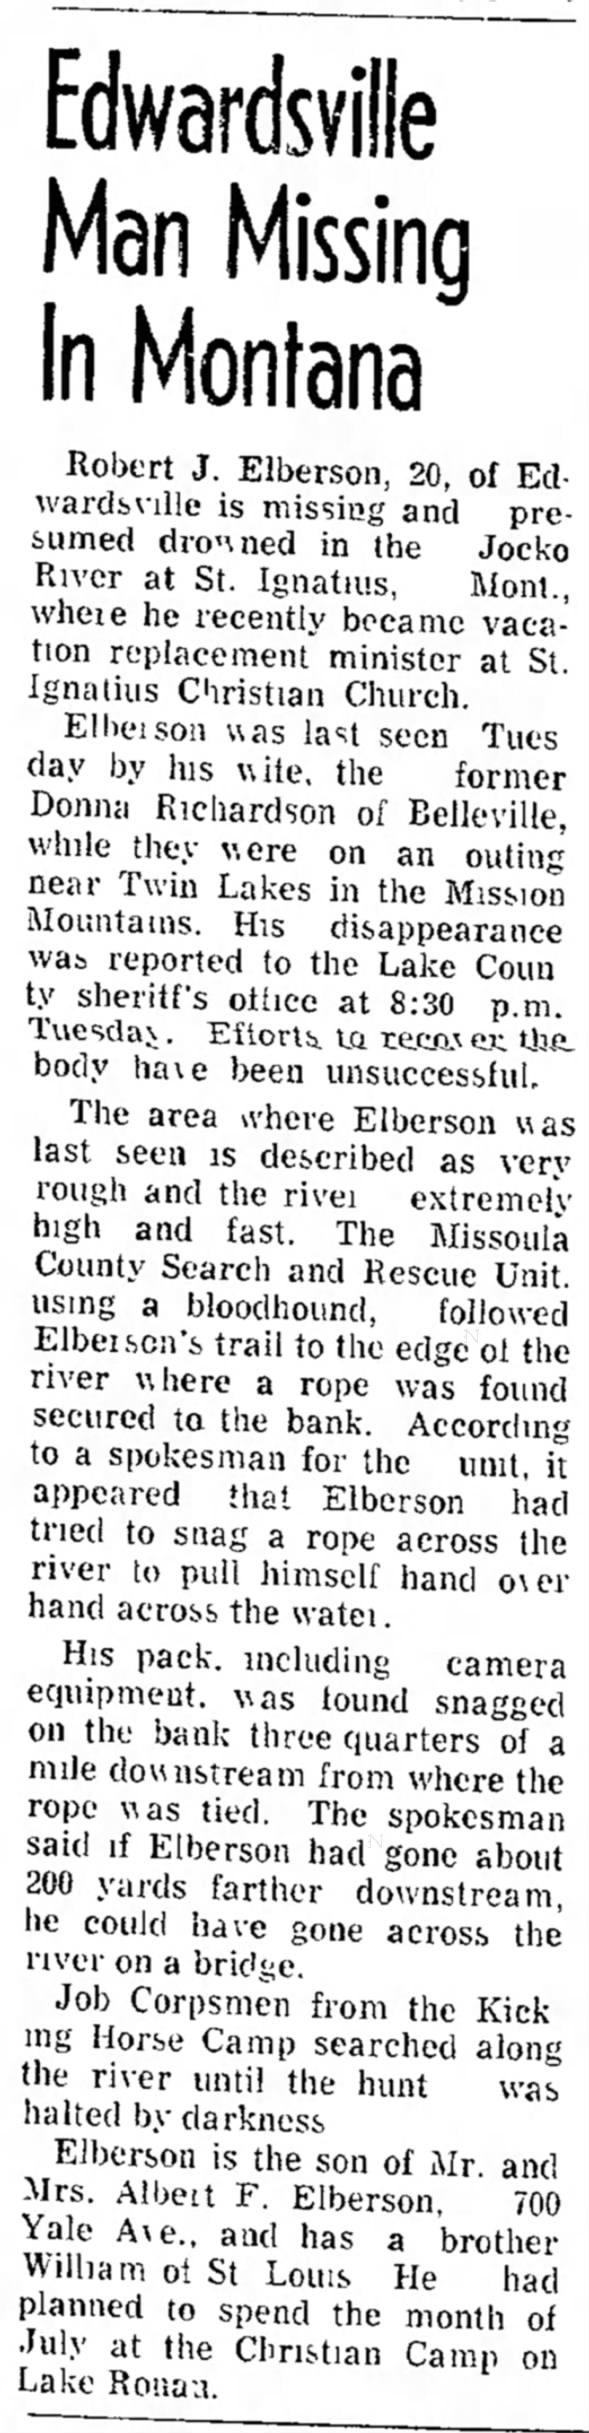 Robert J. Elberson Missing and Presumed Drowned